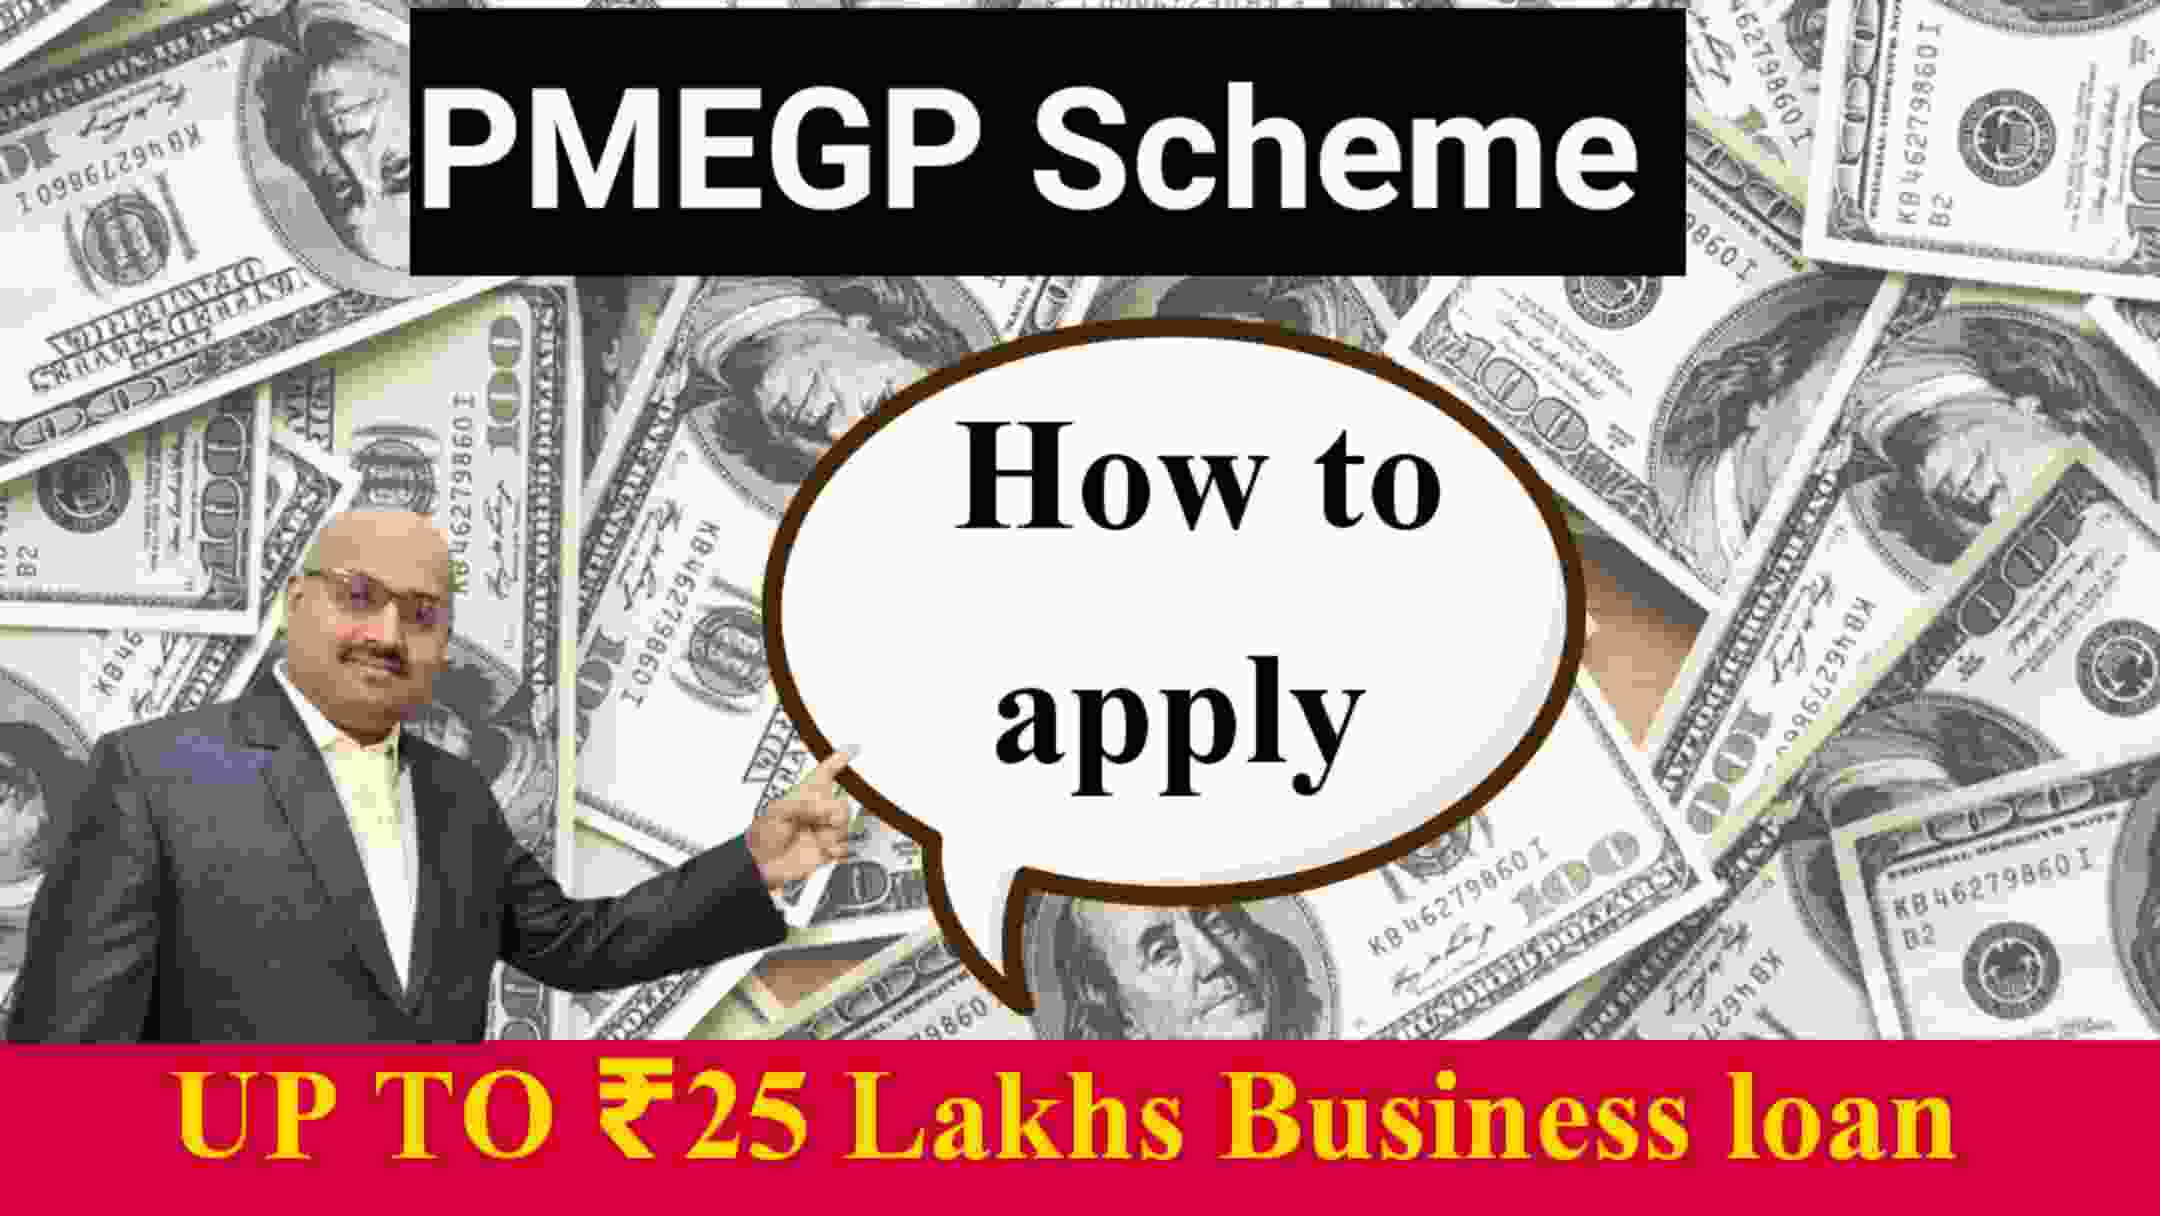 Pradhan Mantri Mudra Loan/ PMEGP Scheme 2022 Get ₹ 25 lakh loan without documents /